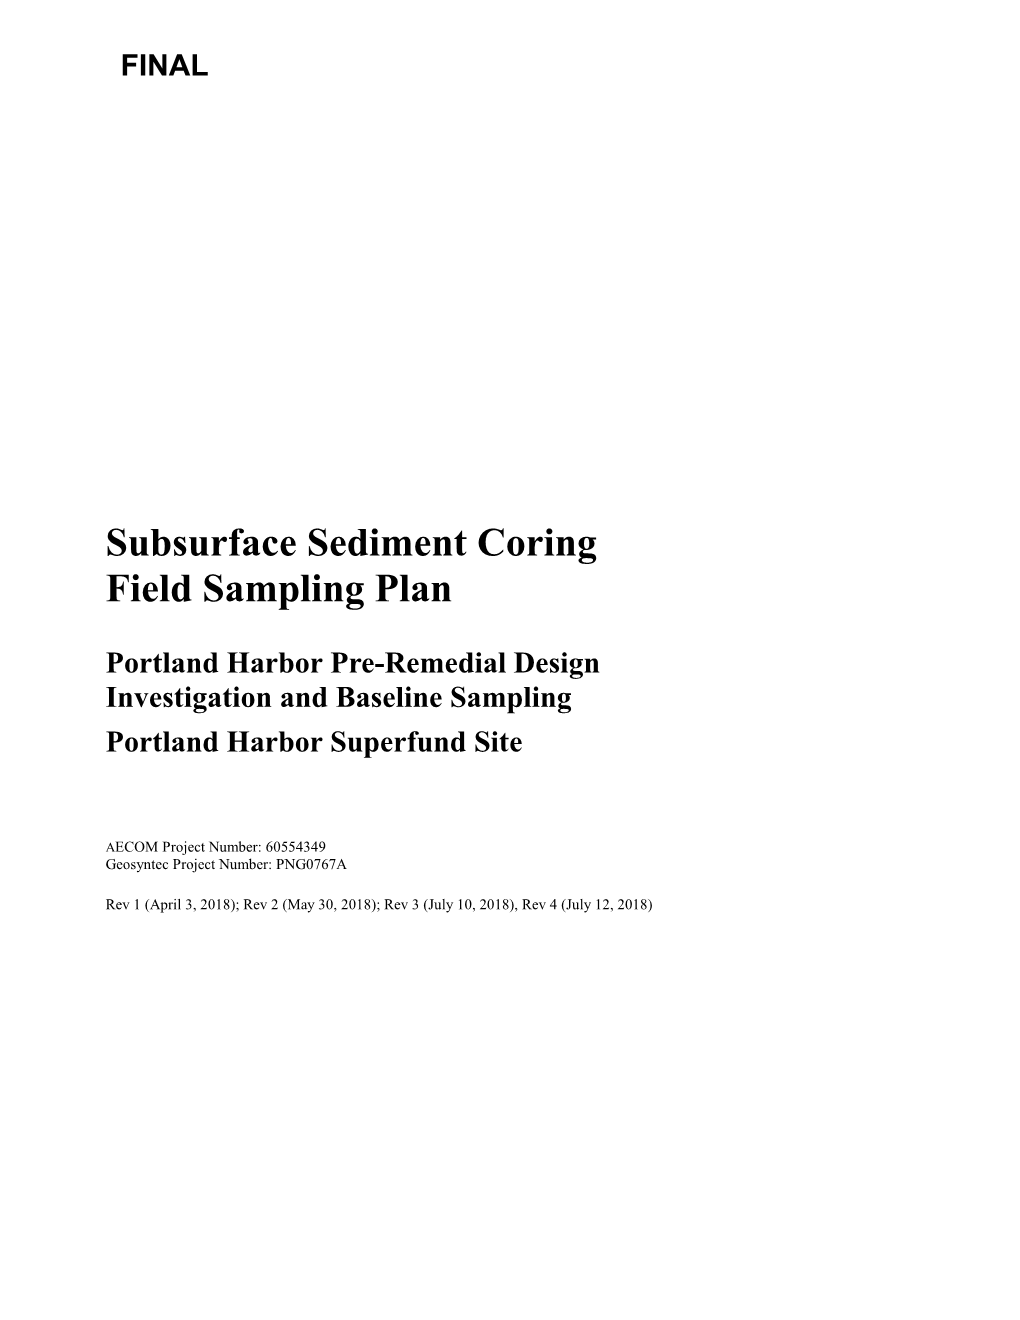 Subsurface Sediment Coring Field Sampling Plan